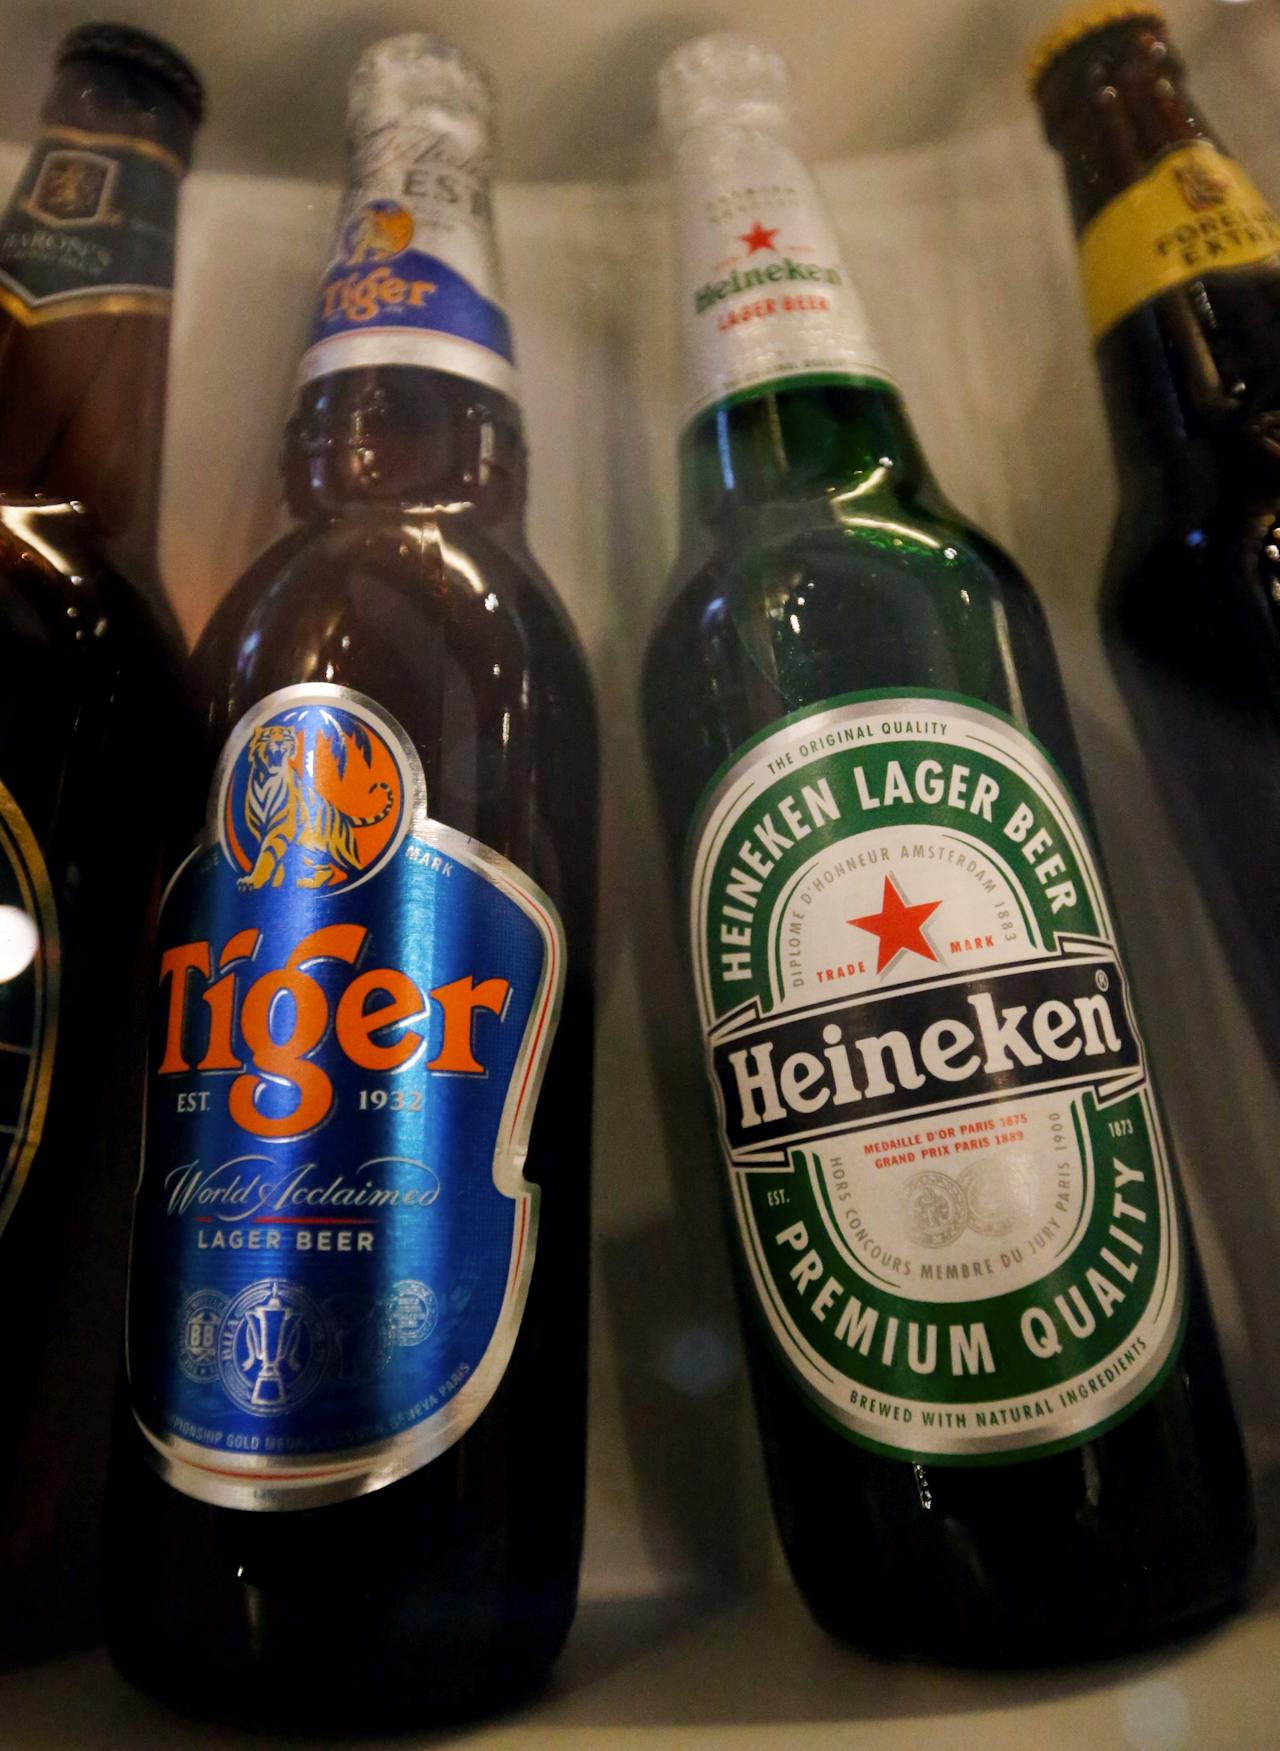 Heineken en Tiger